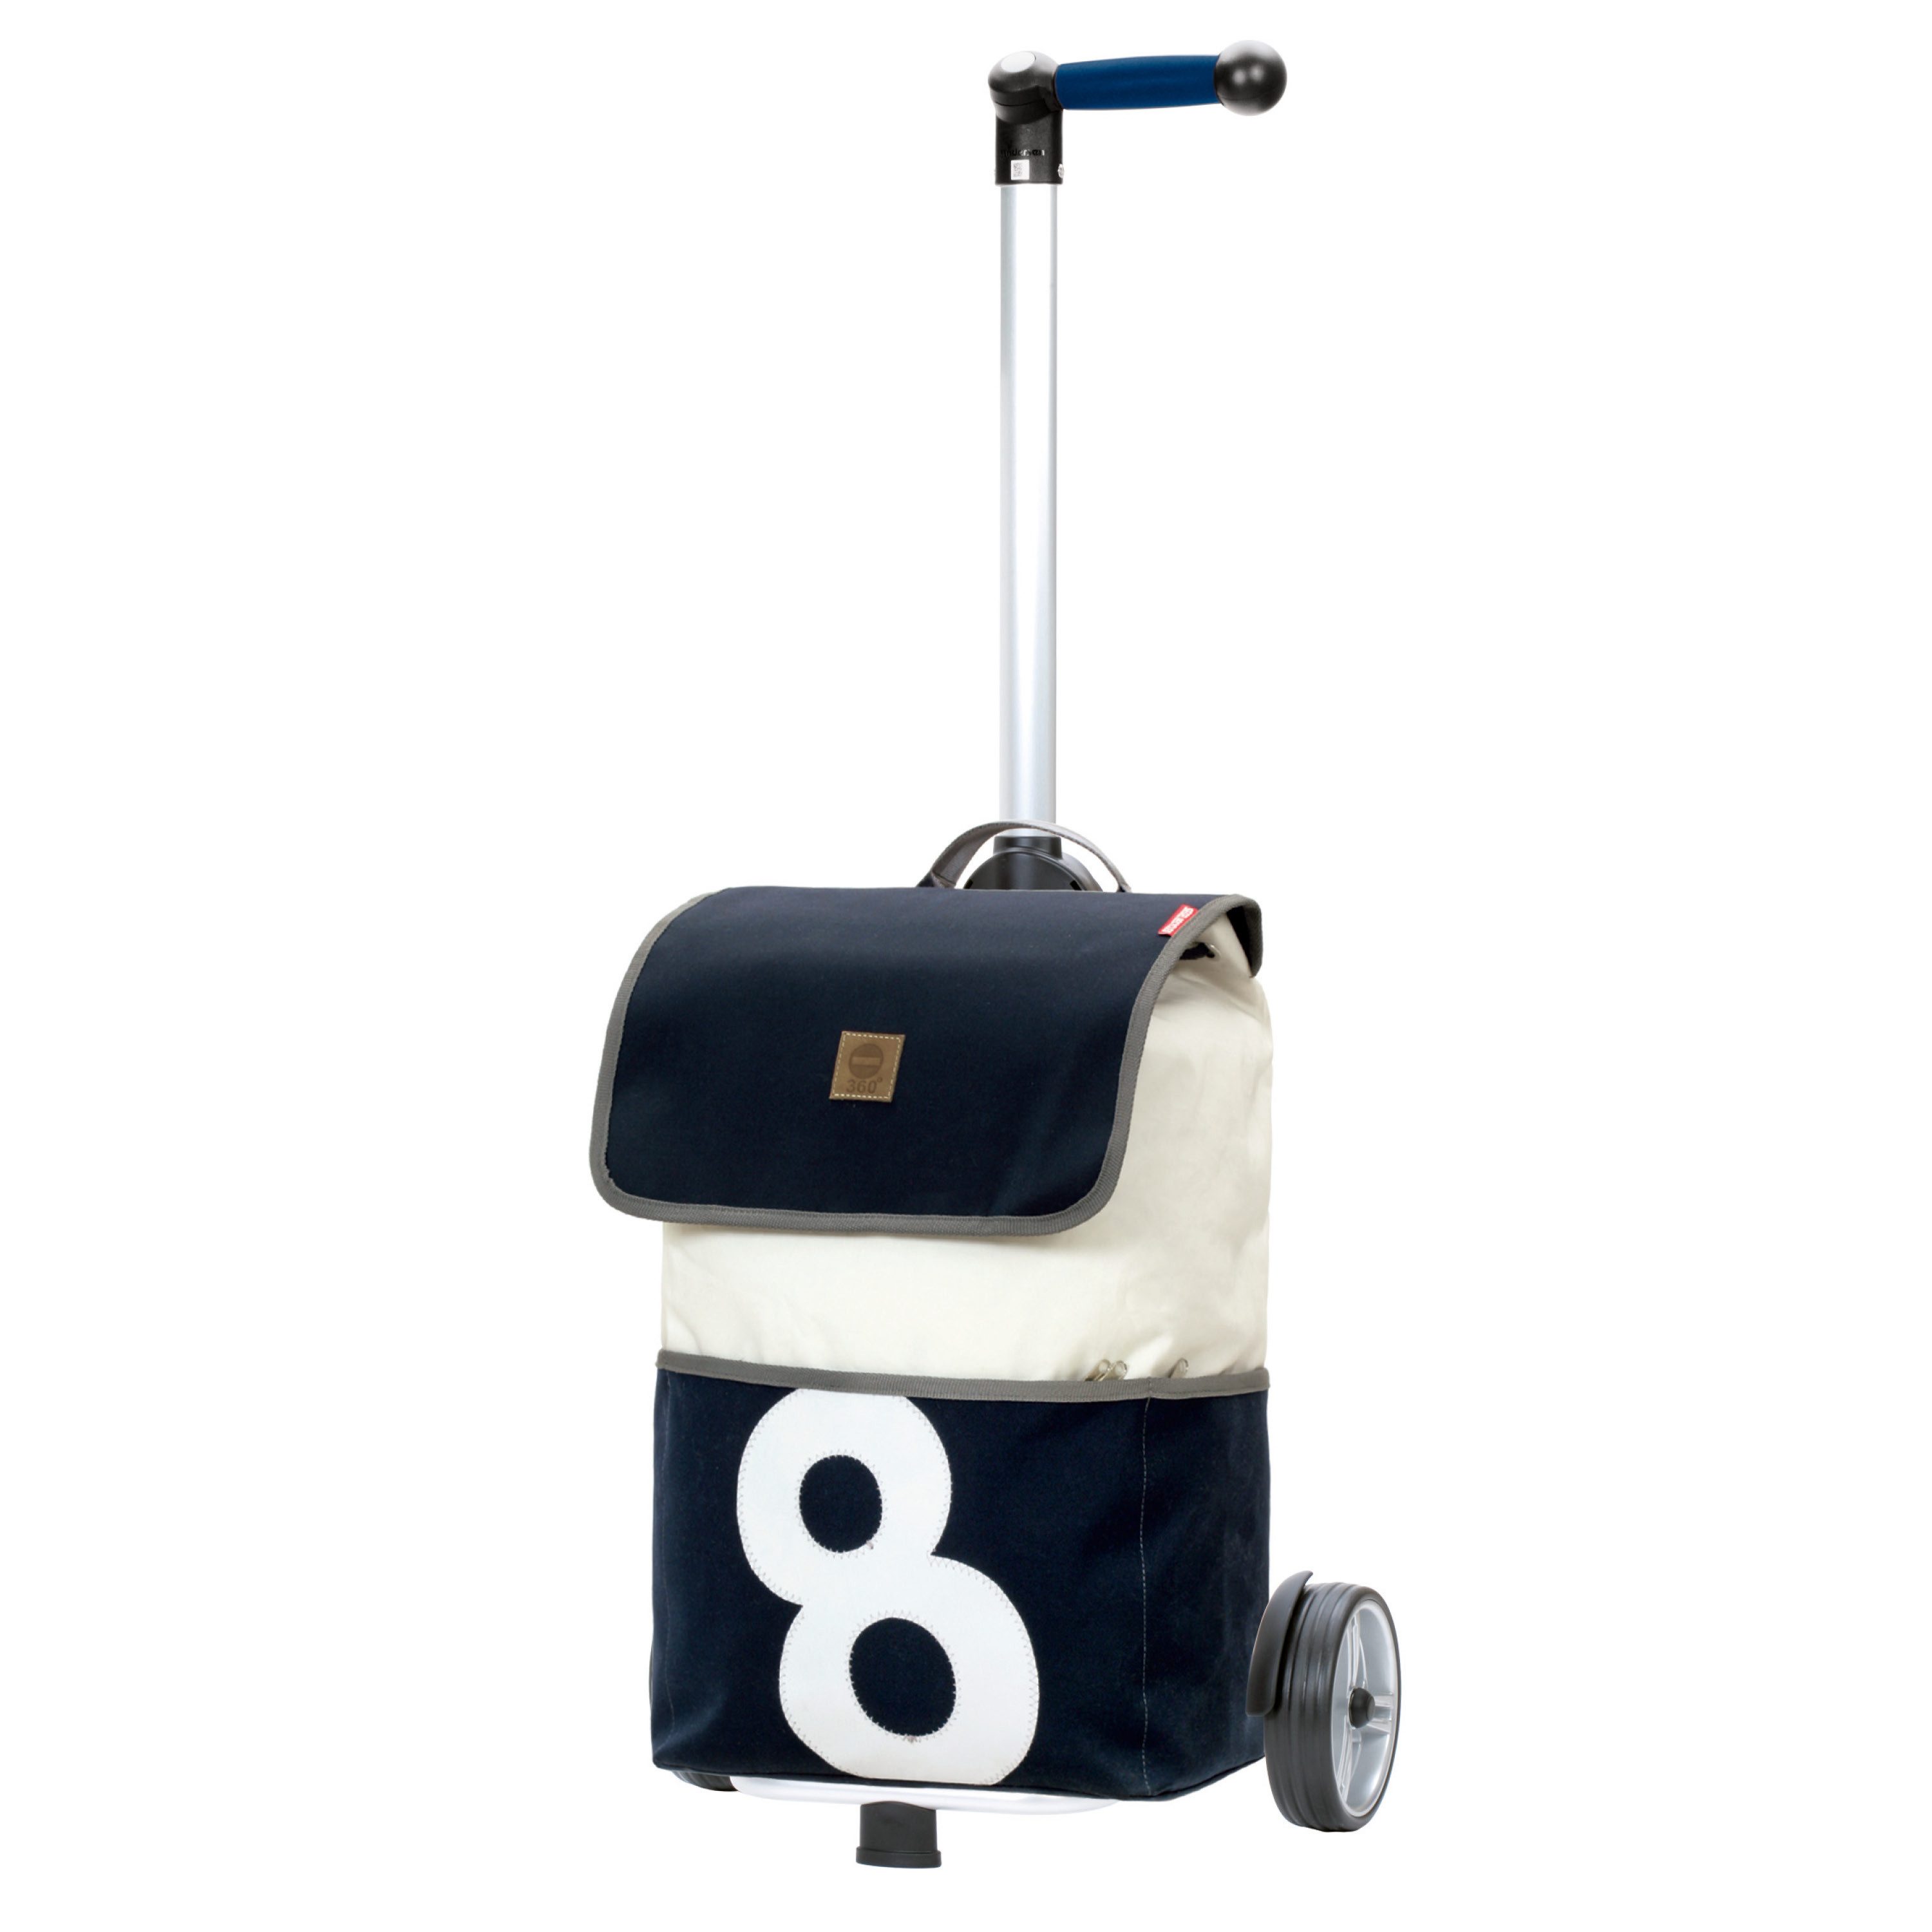 Andersen Einkaufstrolley Unus Shopper mit Tasche 360° Grad Mole mit Nr. 2 oder Nr. 8